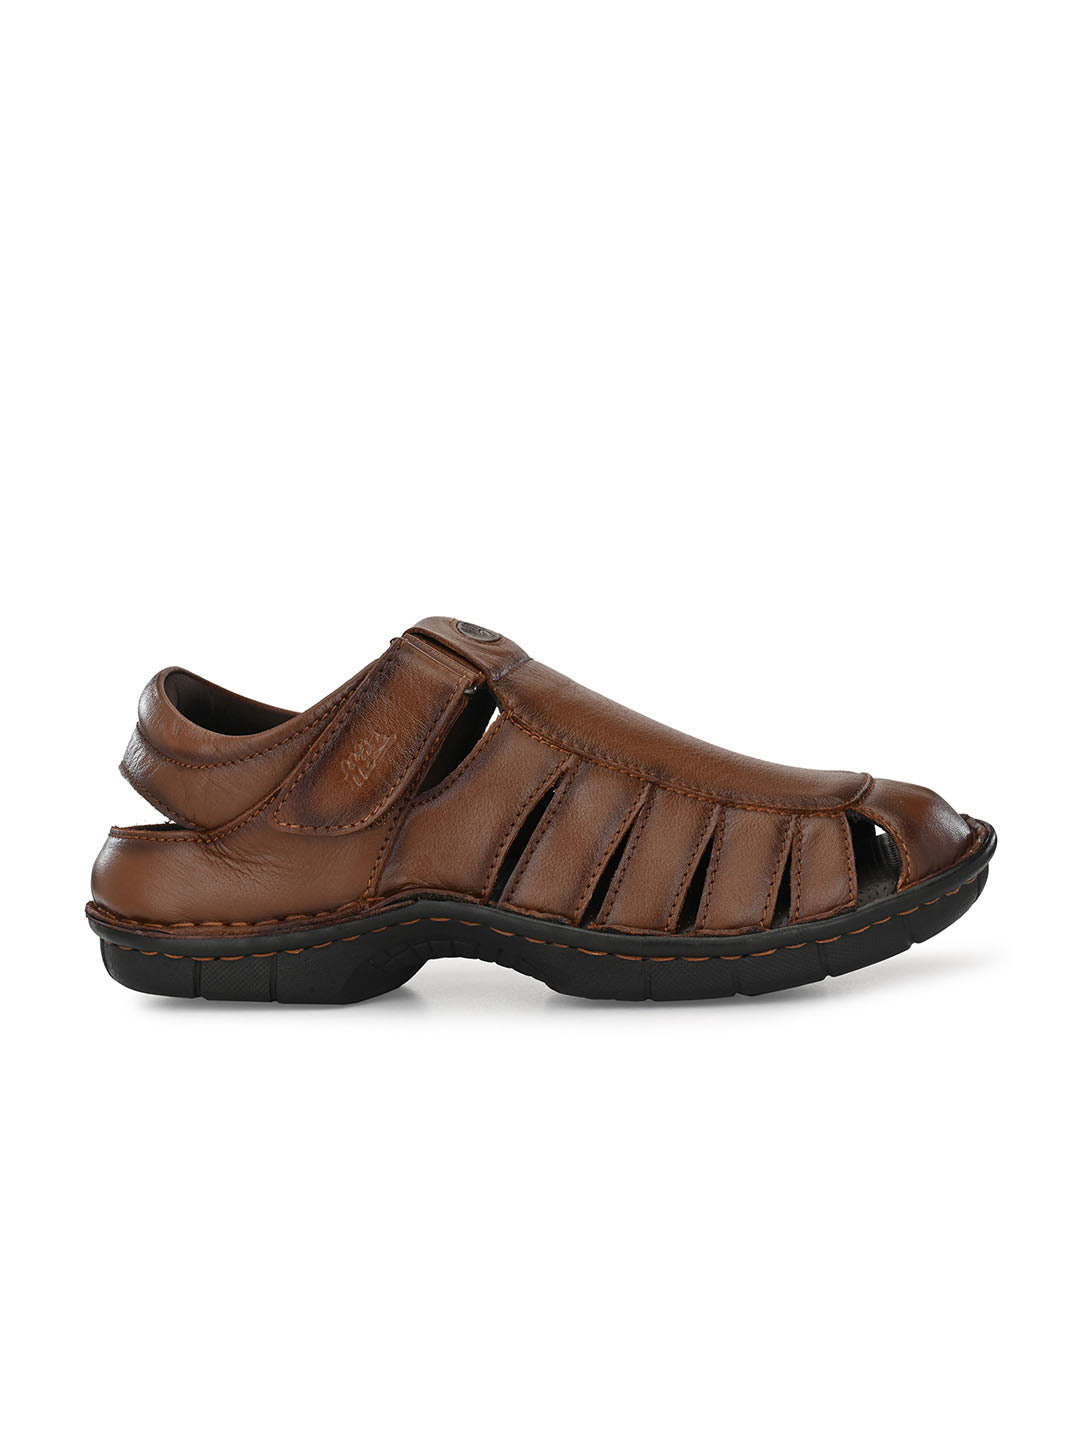 Genesis Brown Leather Slides - Men's Closed Toe Sandals – Jerusalem Sandals